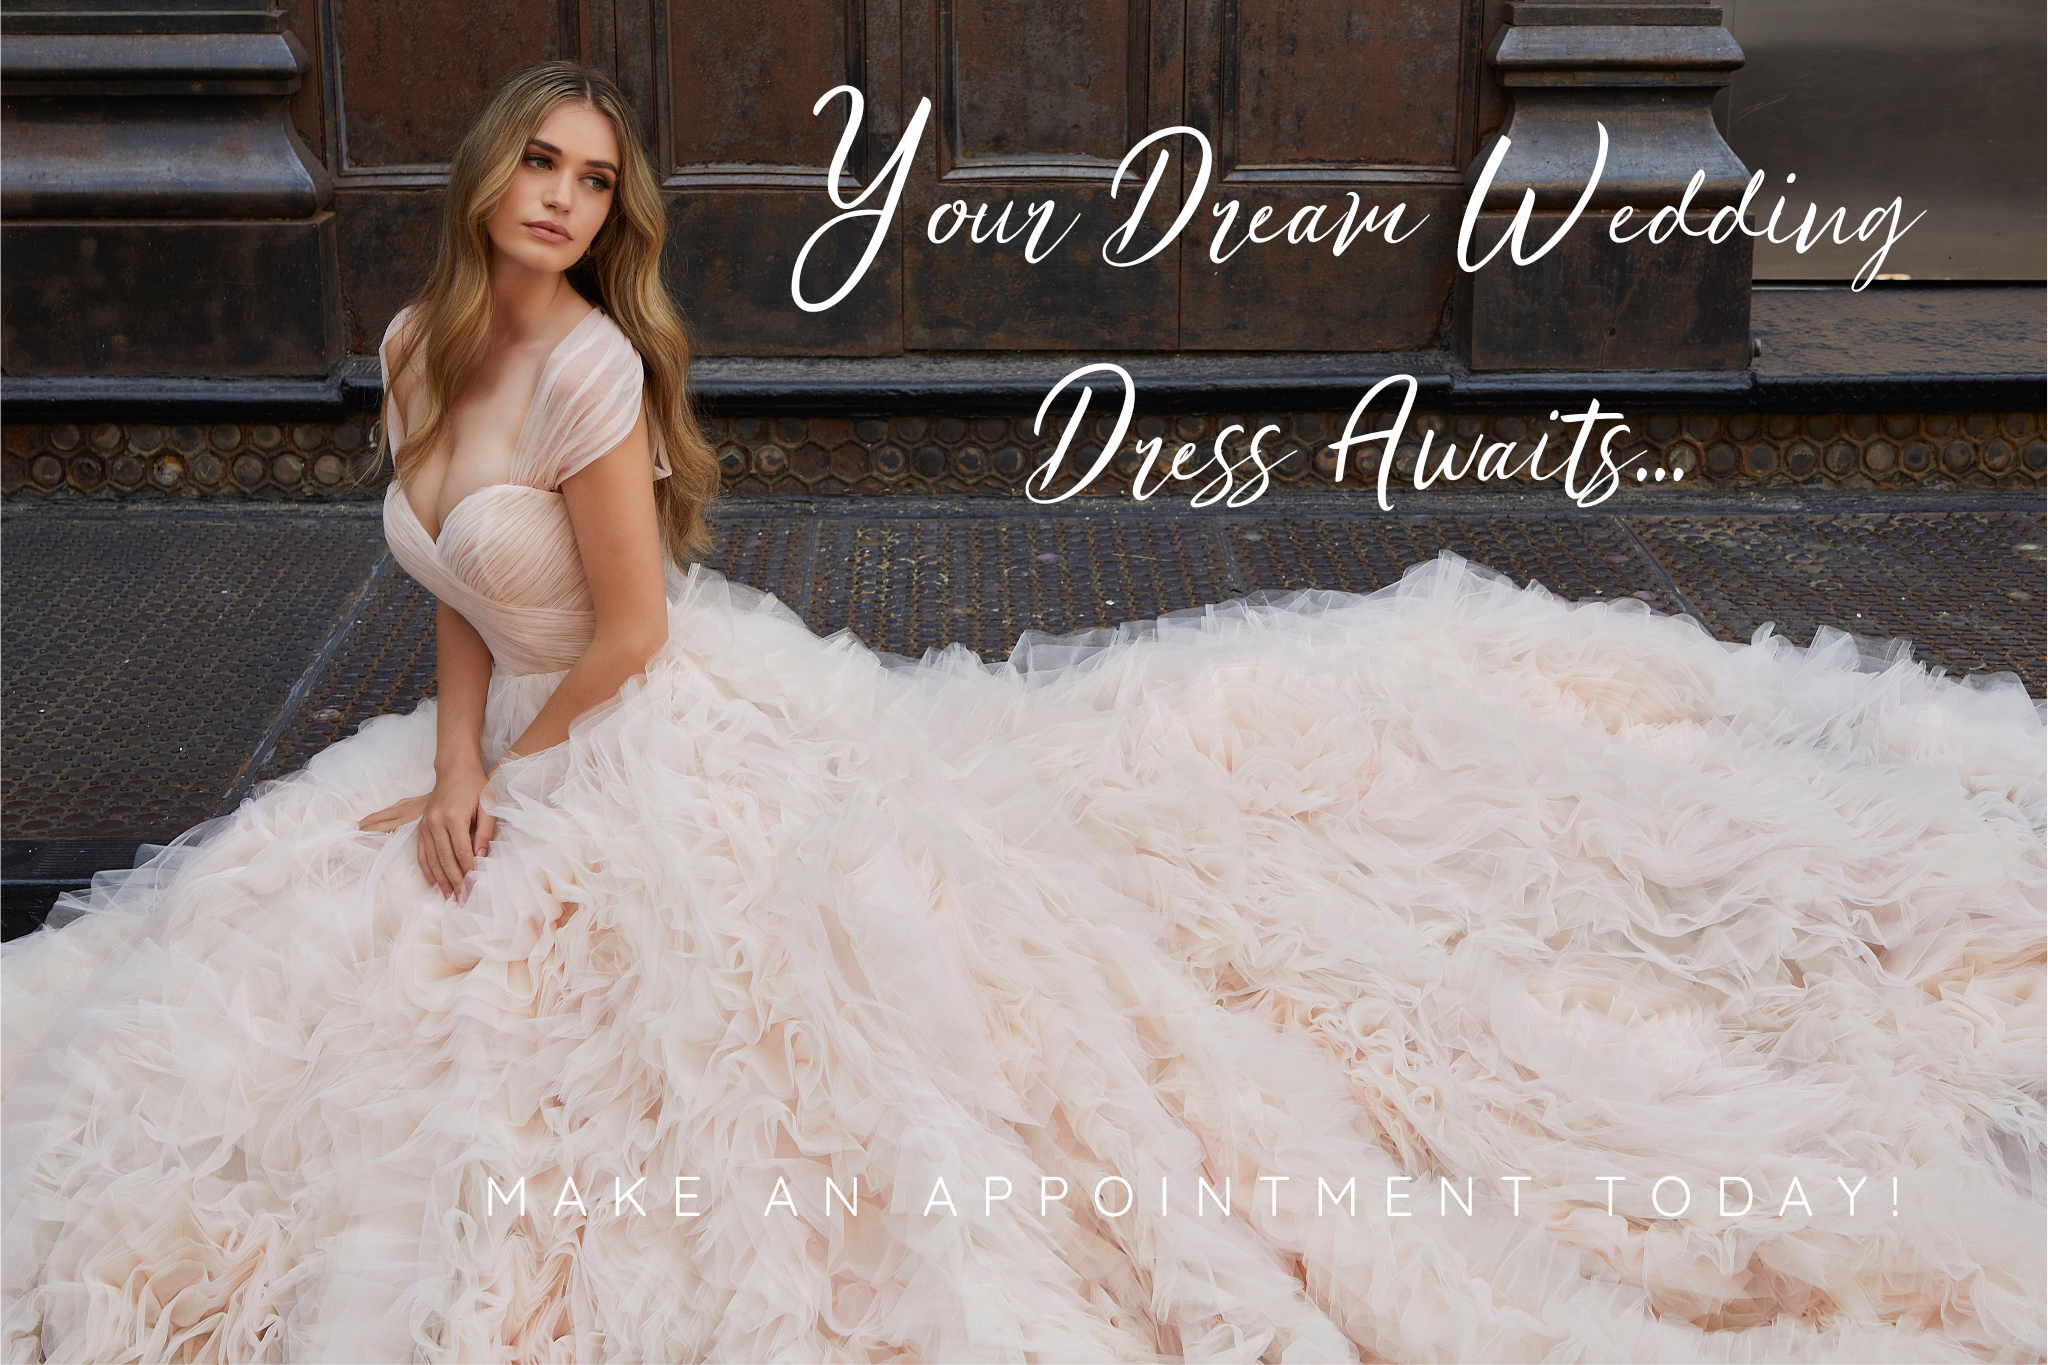 Dream-WeddingDress-Awaits-website-header.png